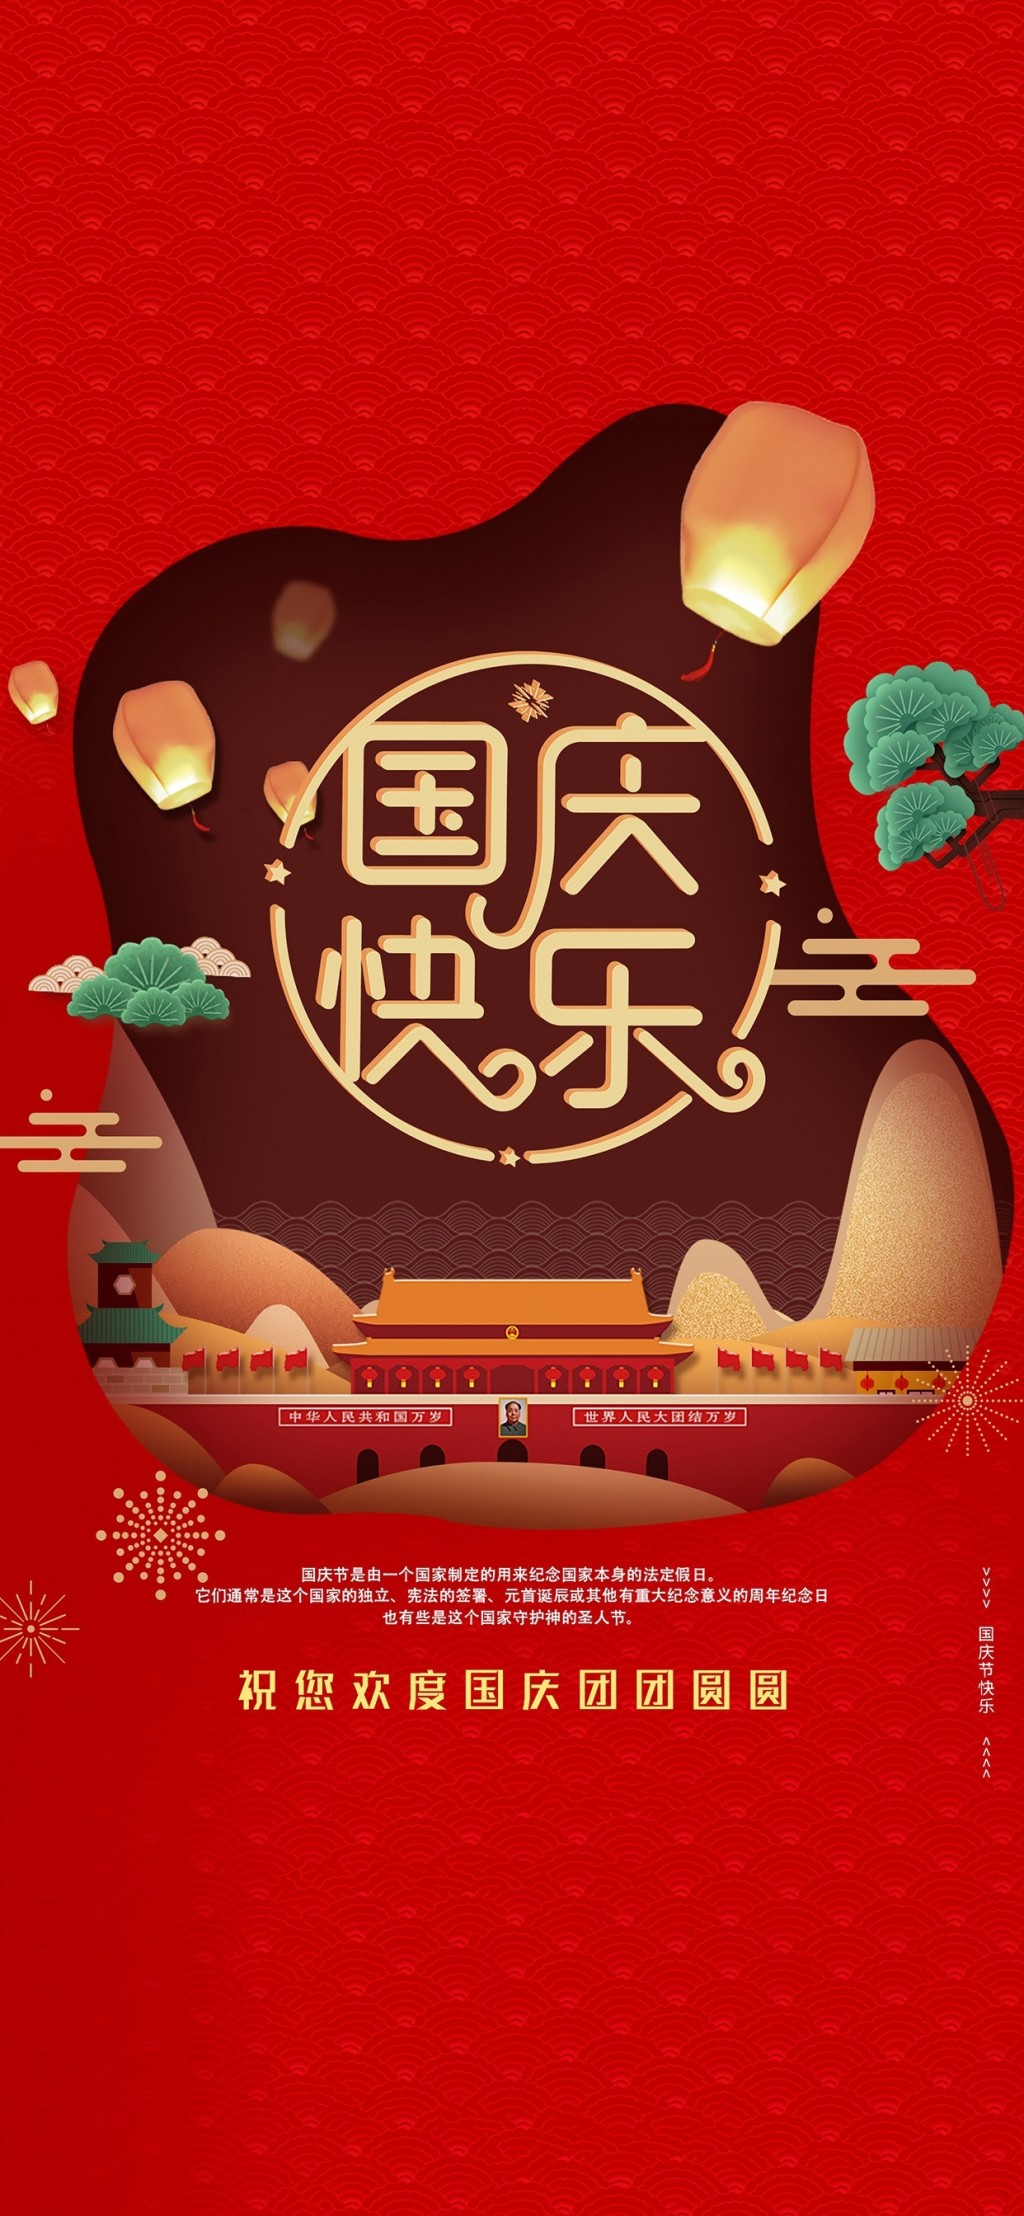 国庆快乐中国红背景手机壁纸